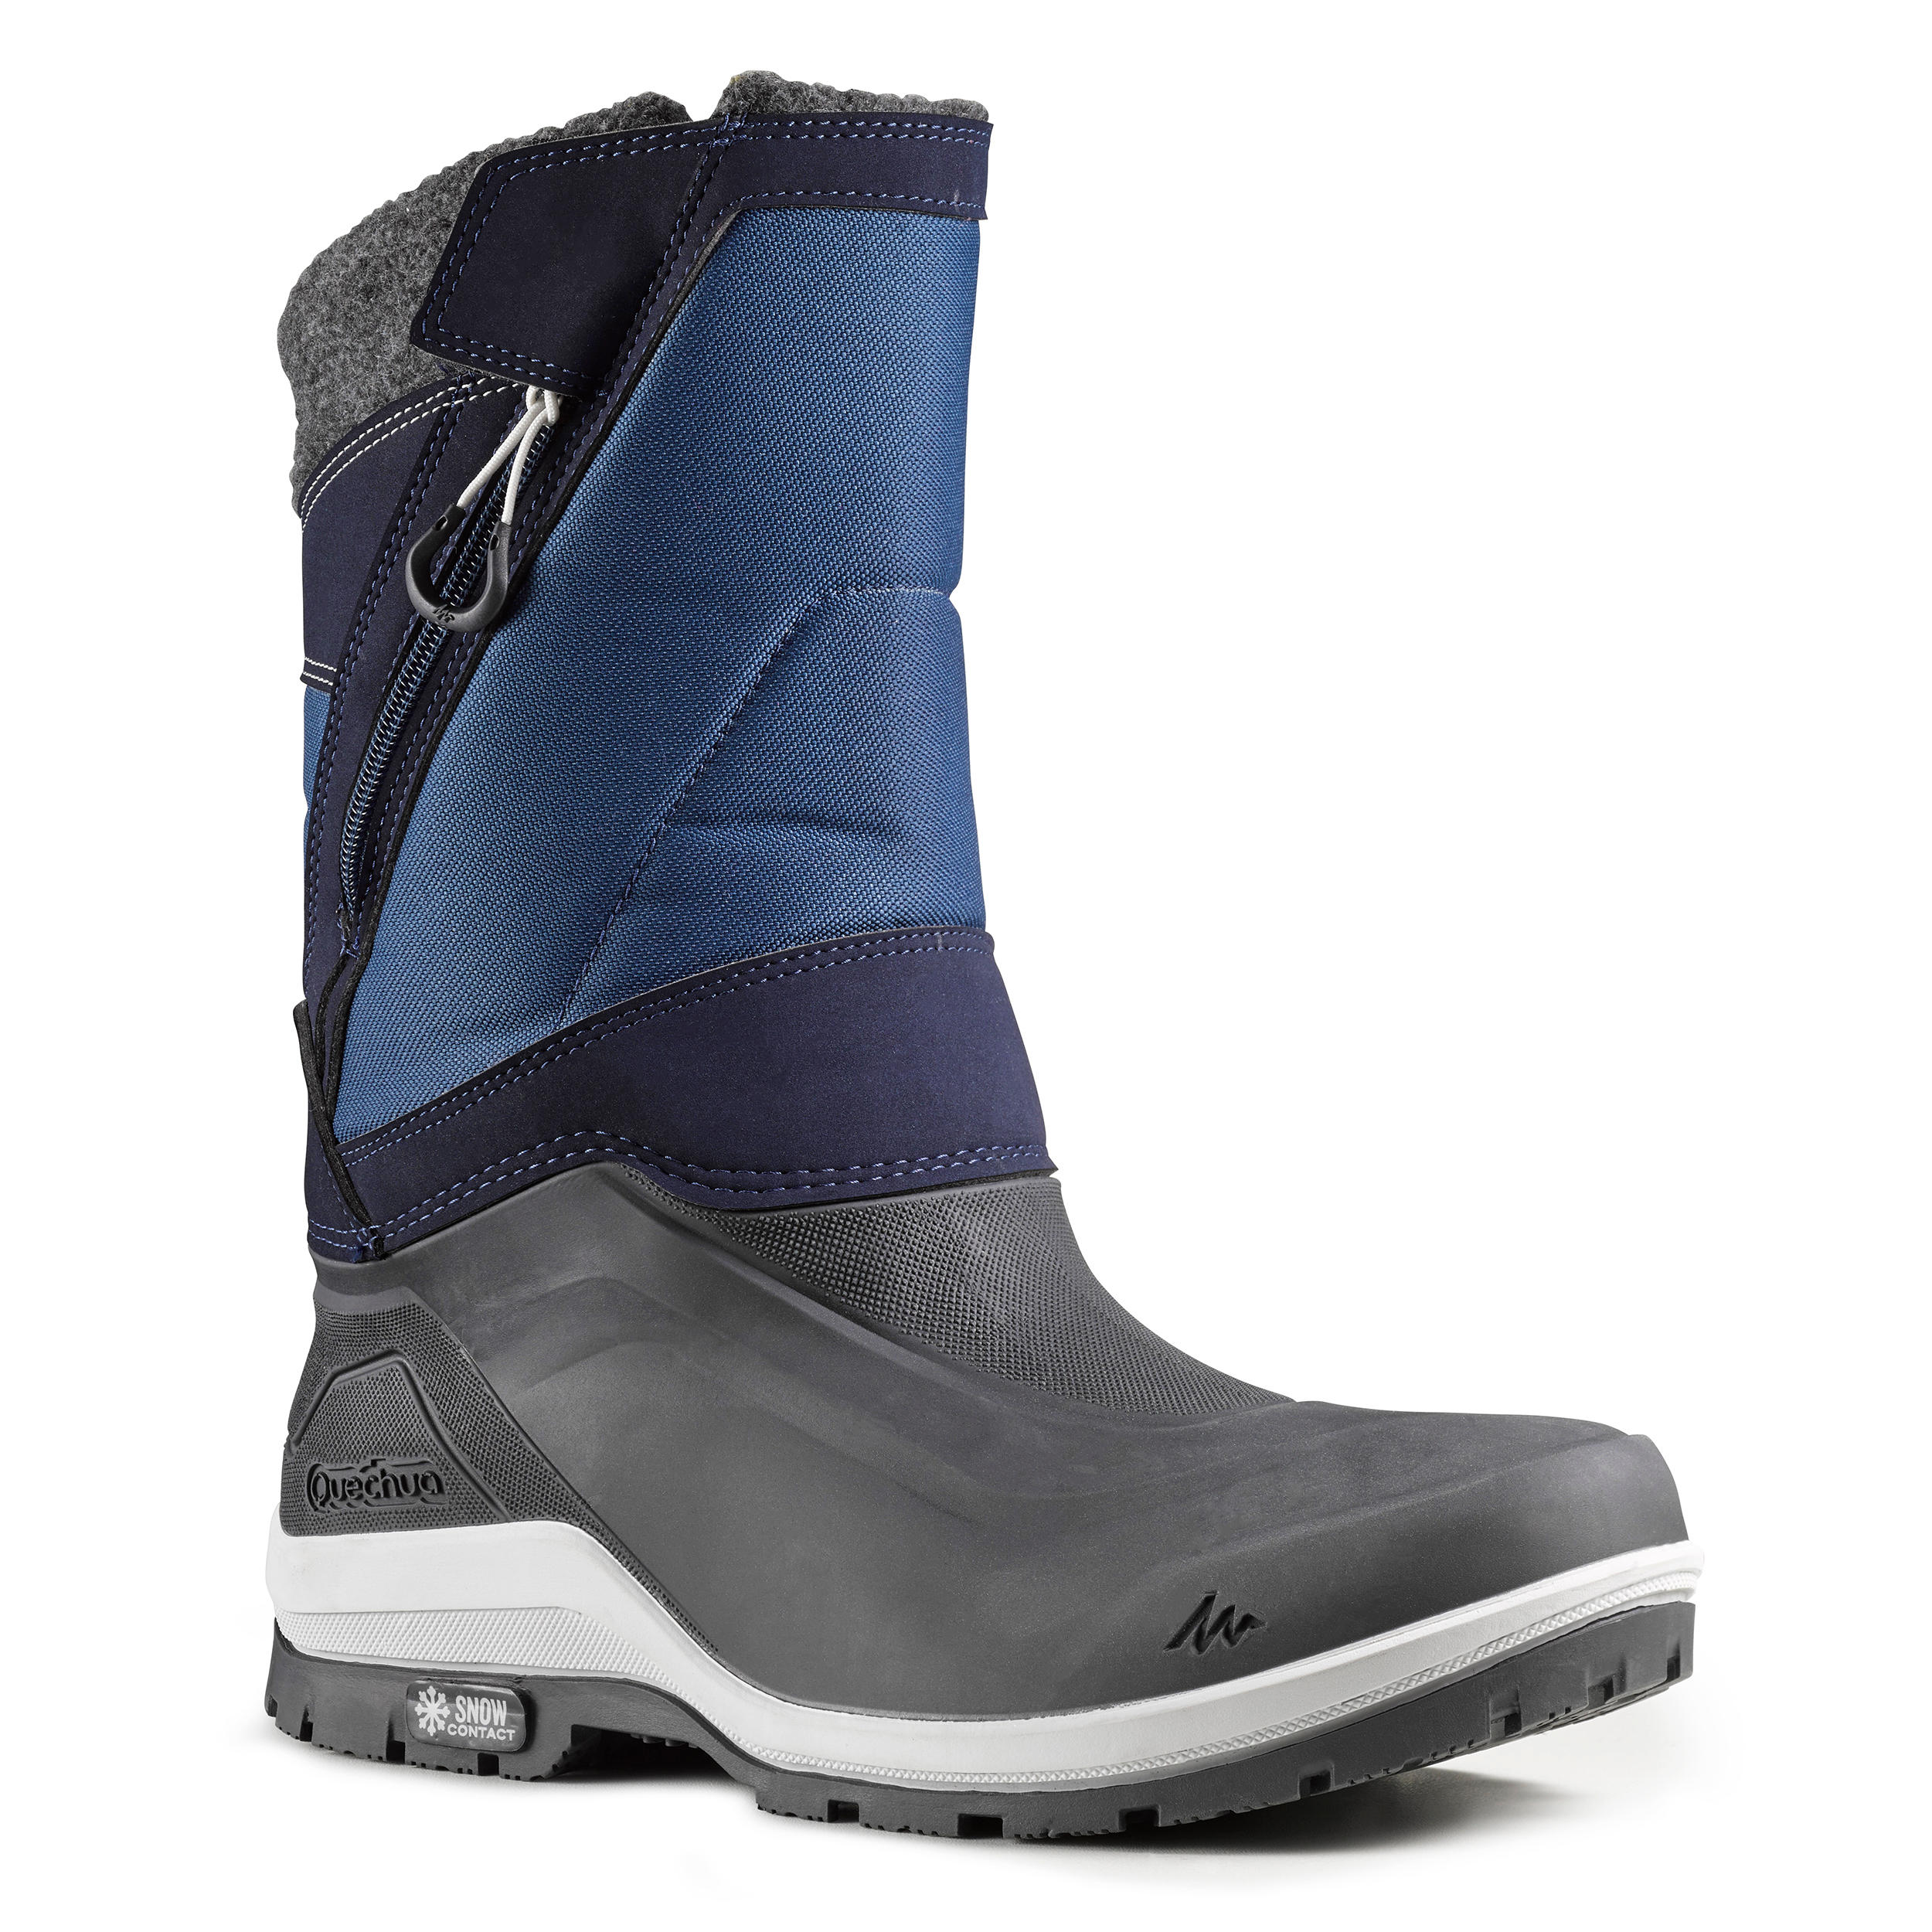 quechua waterproof boots